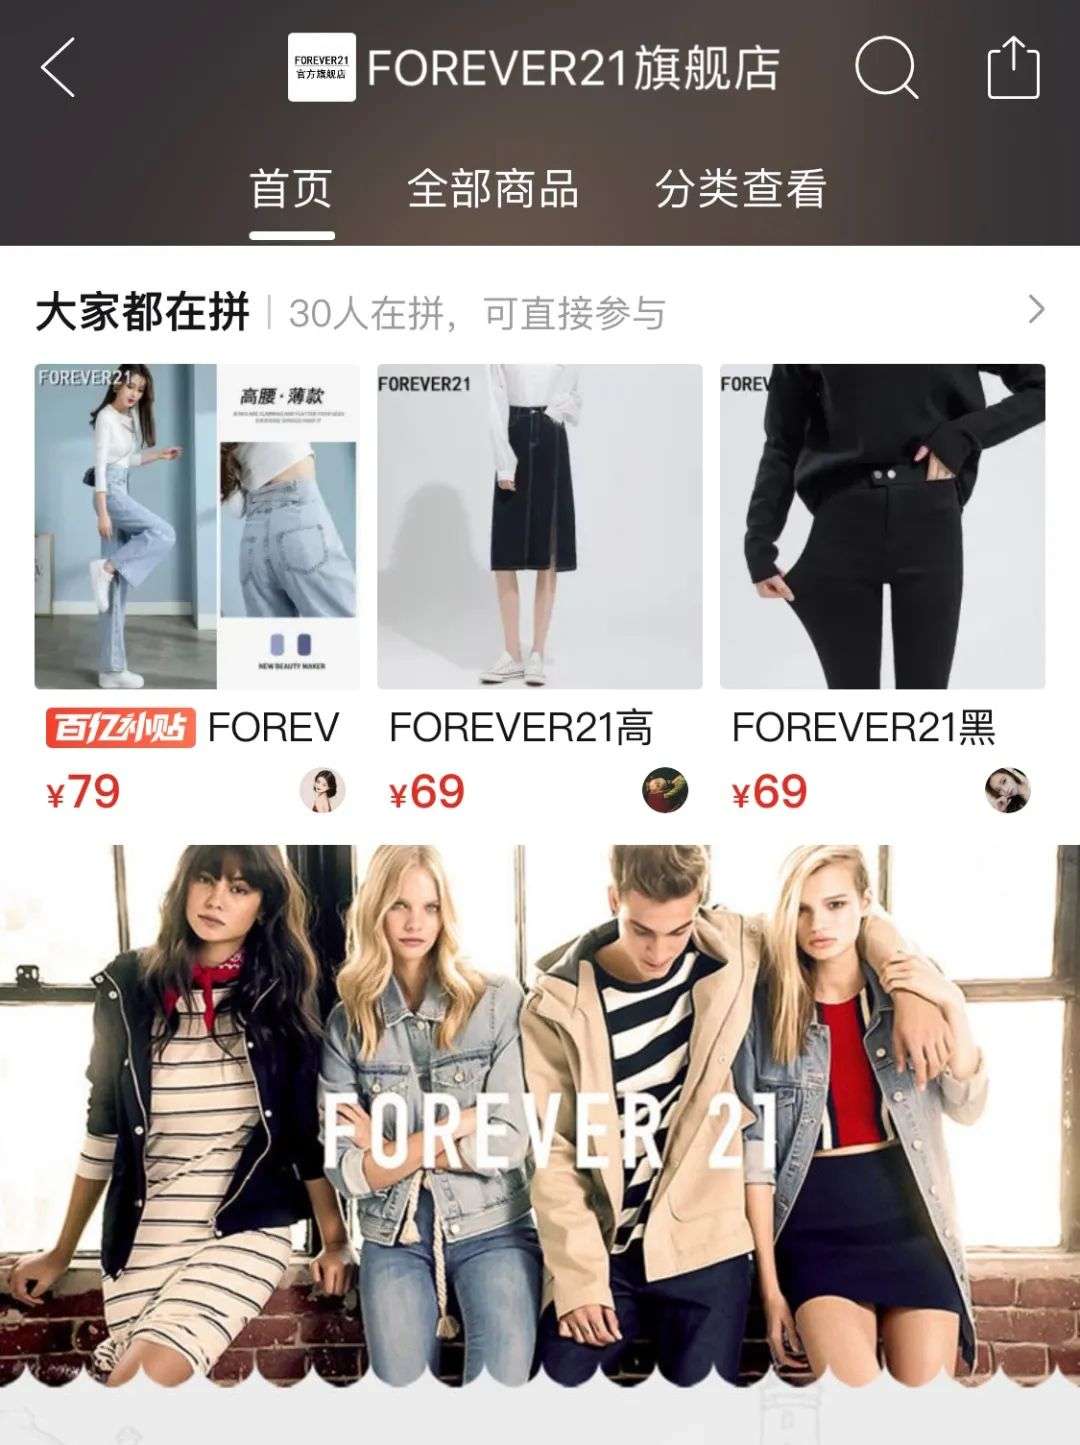 这个快时尚品牌在重返中国市场路上疯狂试探